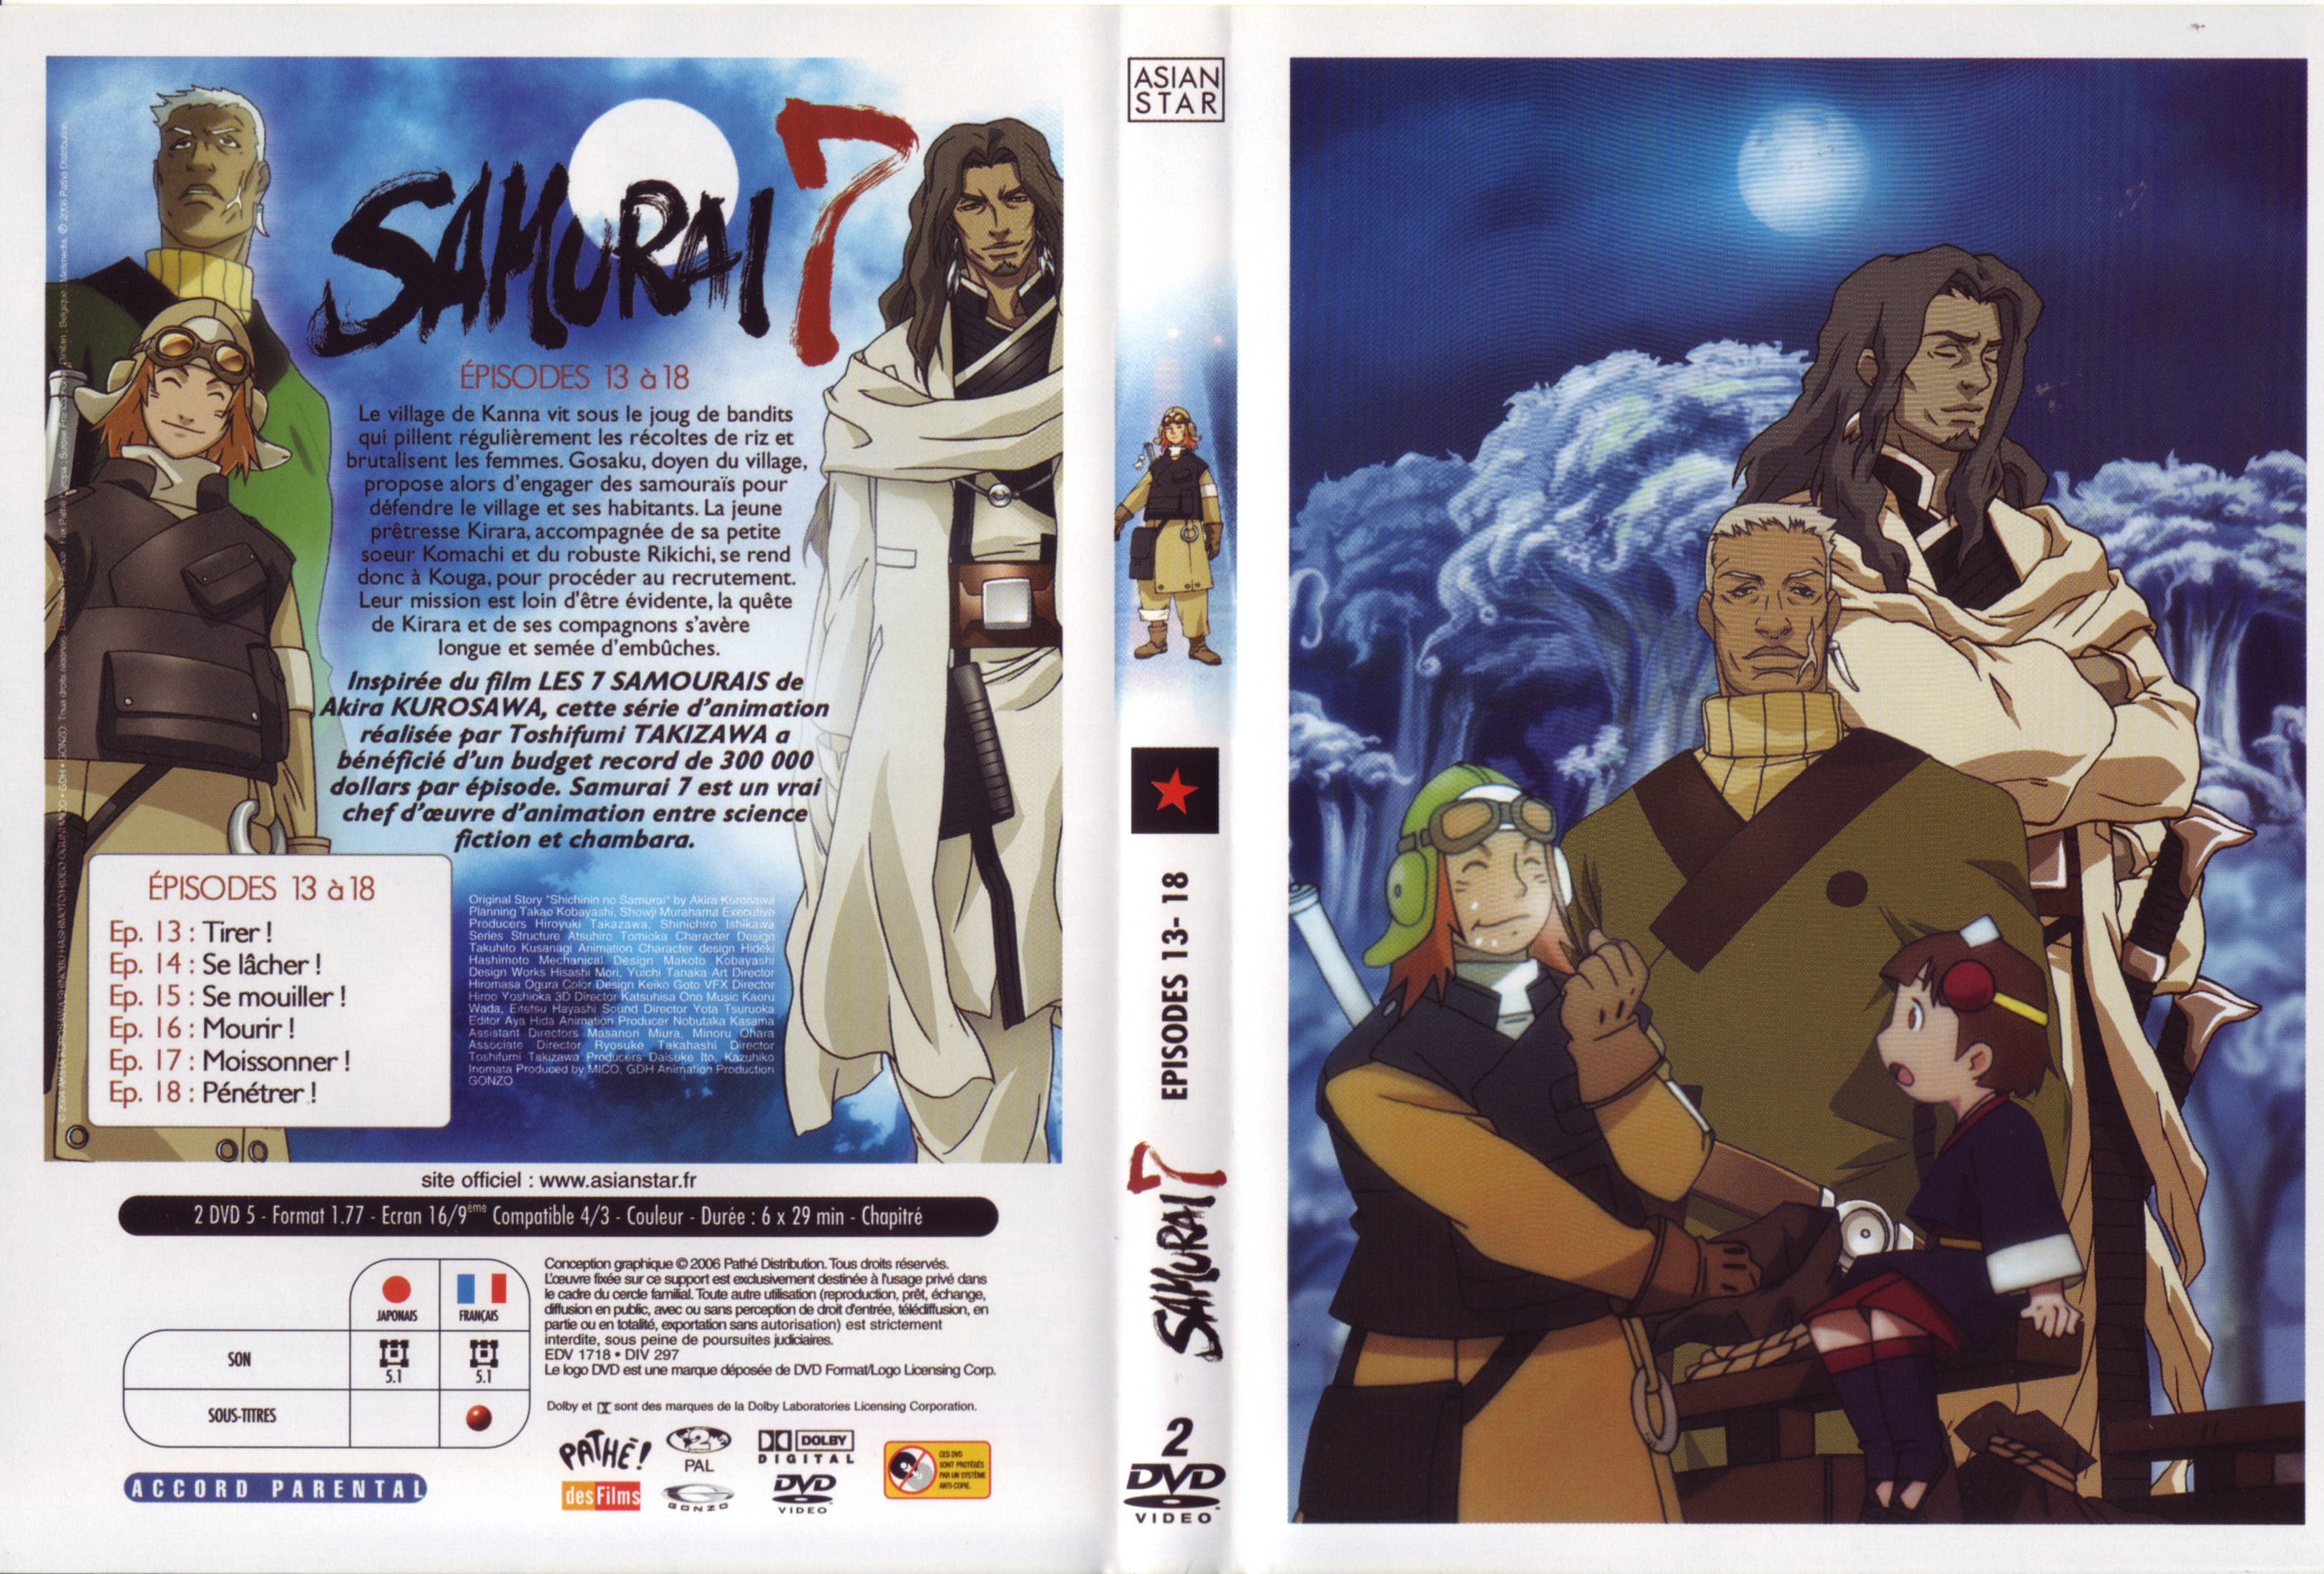 Jaquette DVD Samurai 7 vol 03